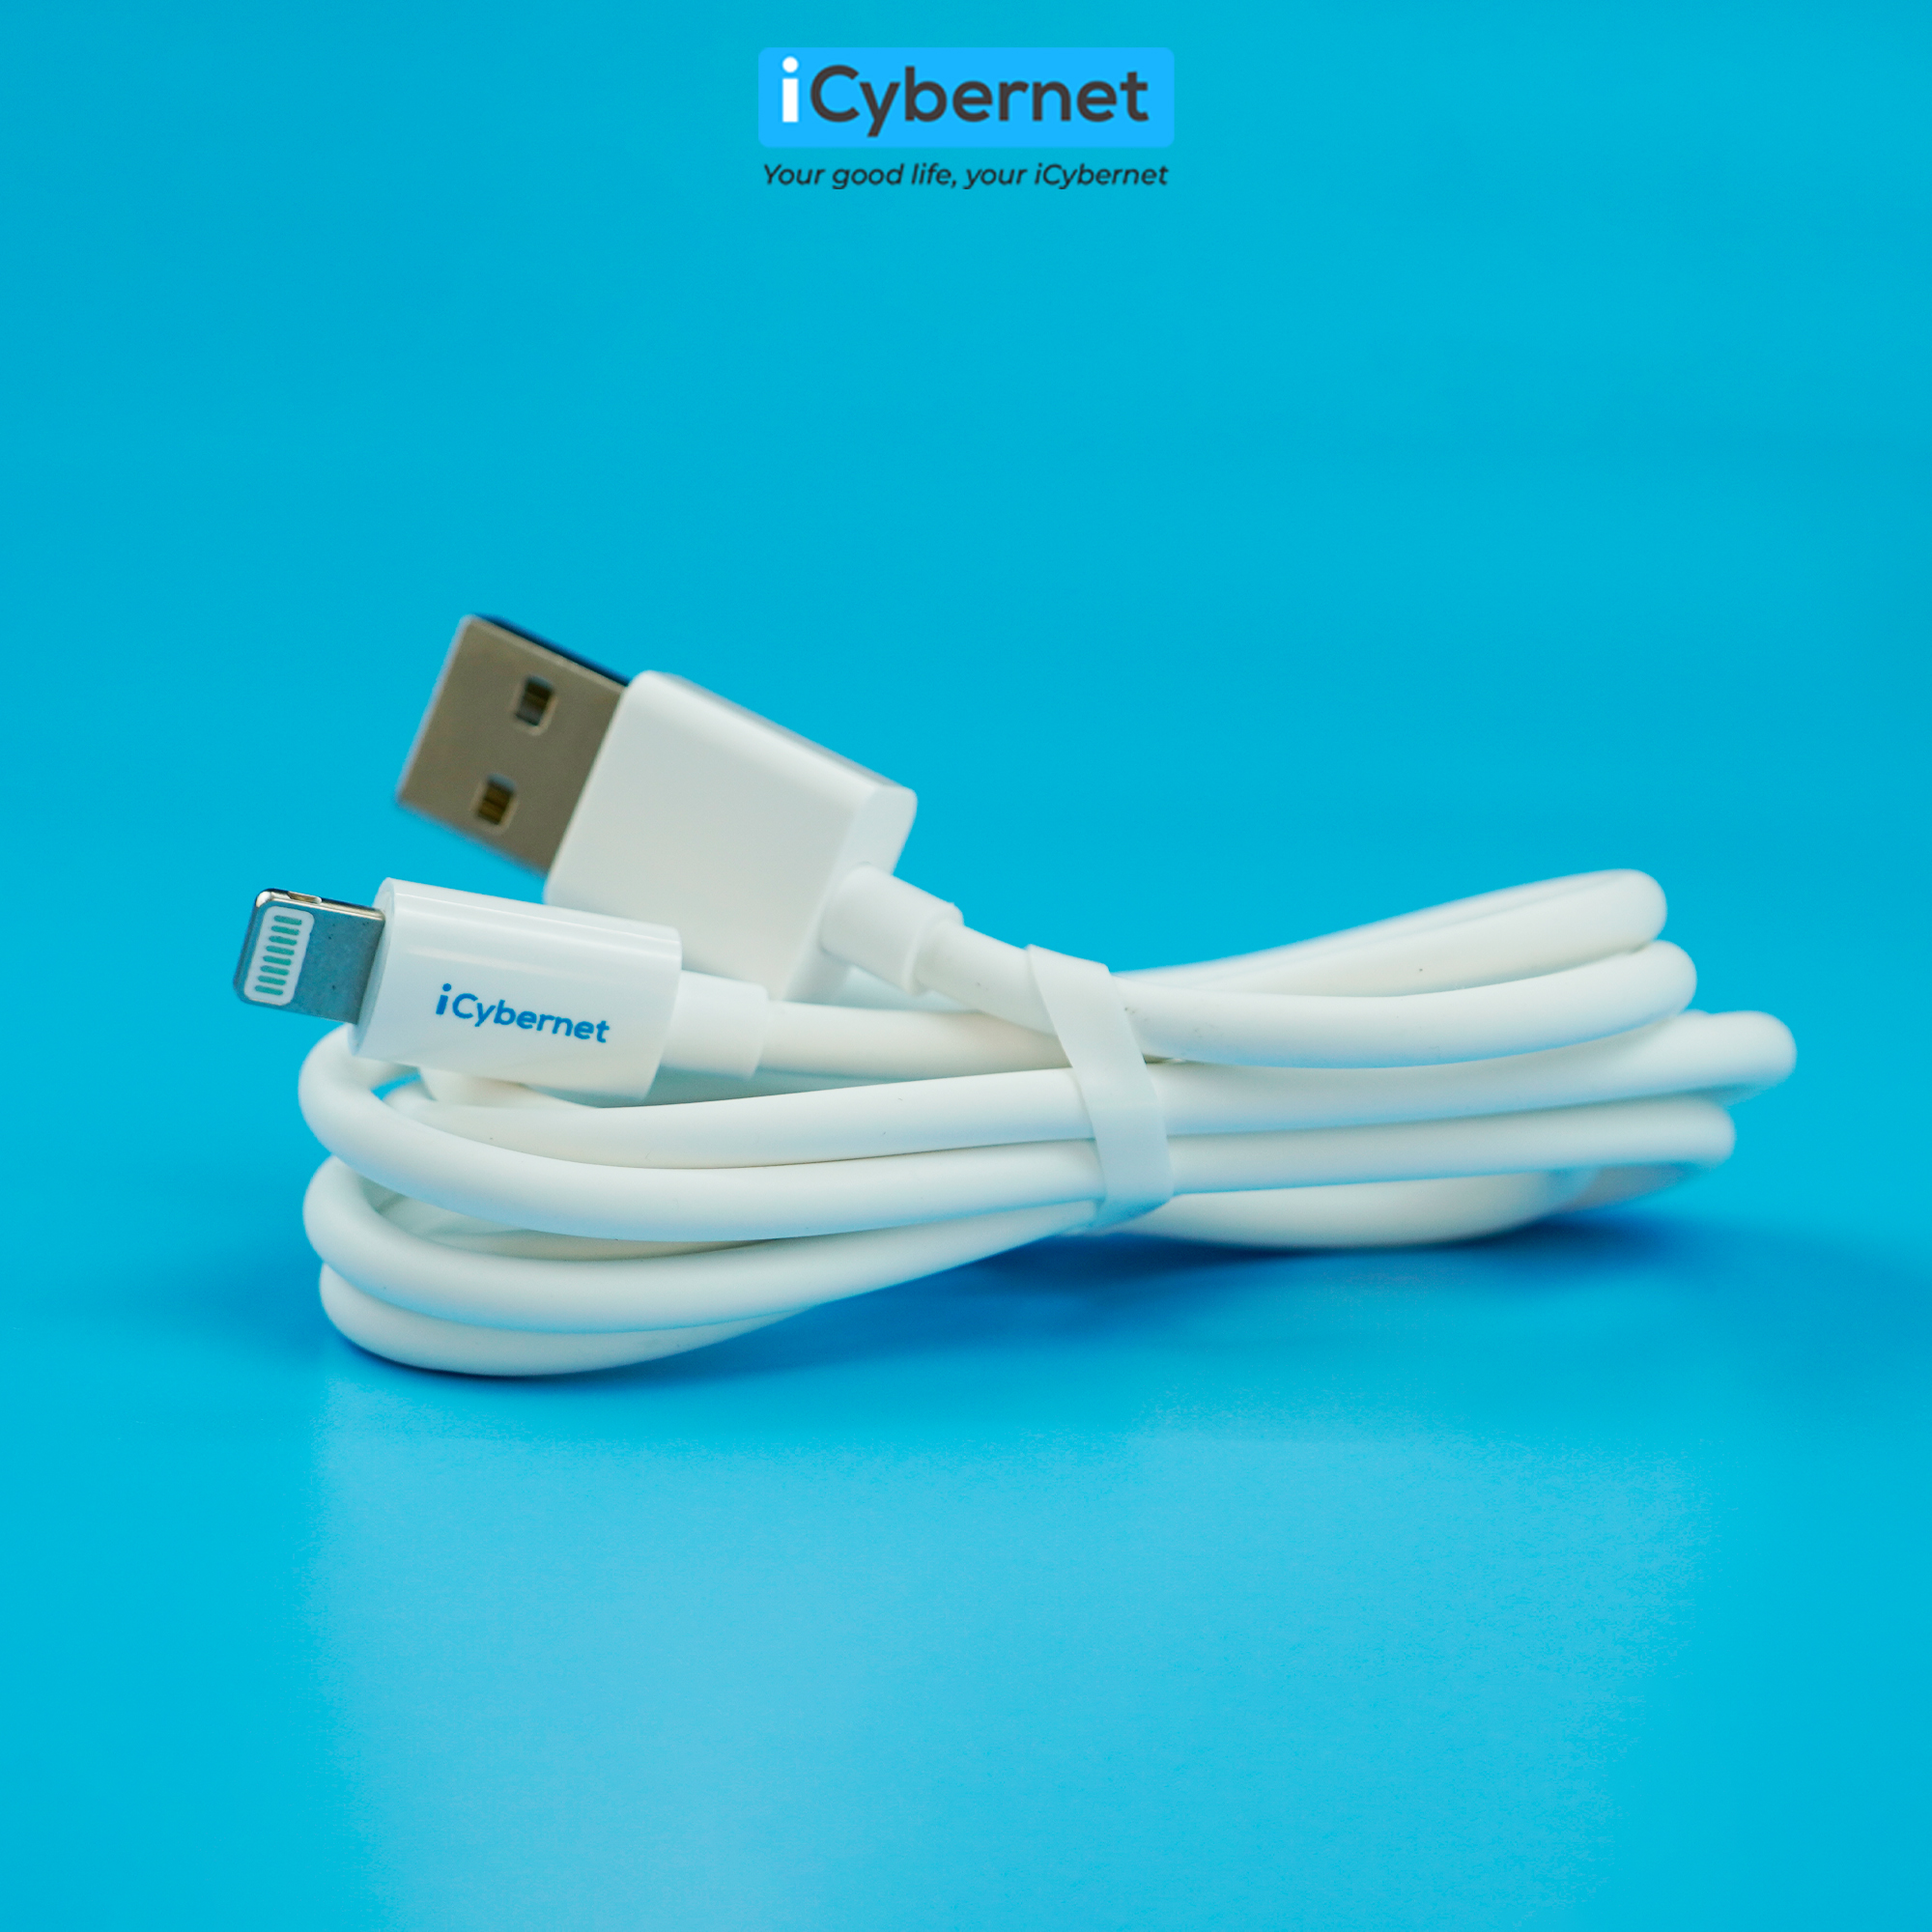 Cáp sạc USB to IP iCybernet IC-1001 sạc 2.4A và truyền dữ liệu đồng thời, chiều dài 1,2m - Hàng chính hãng